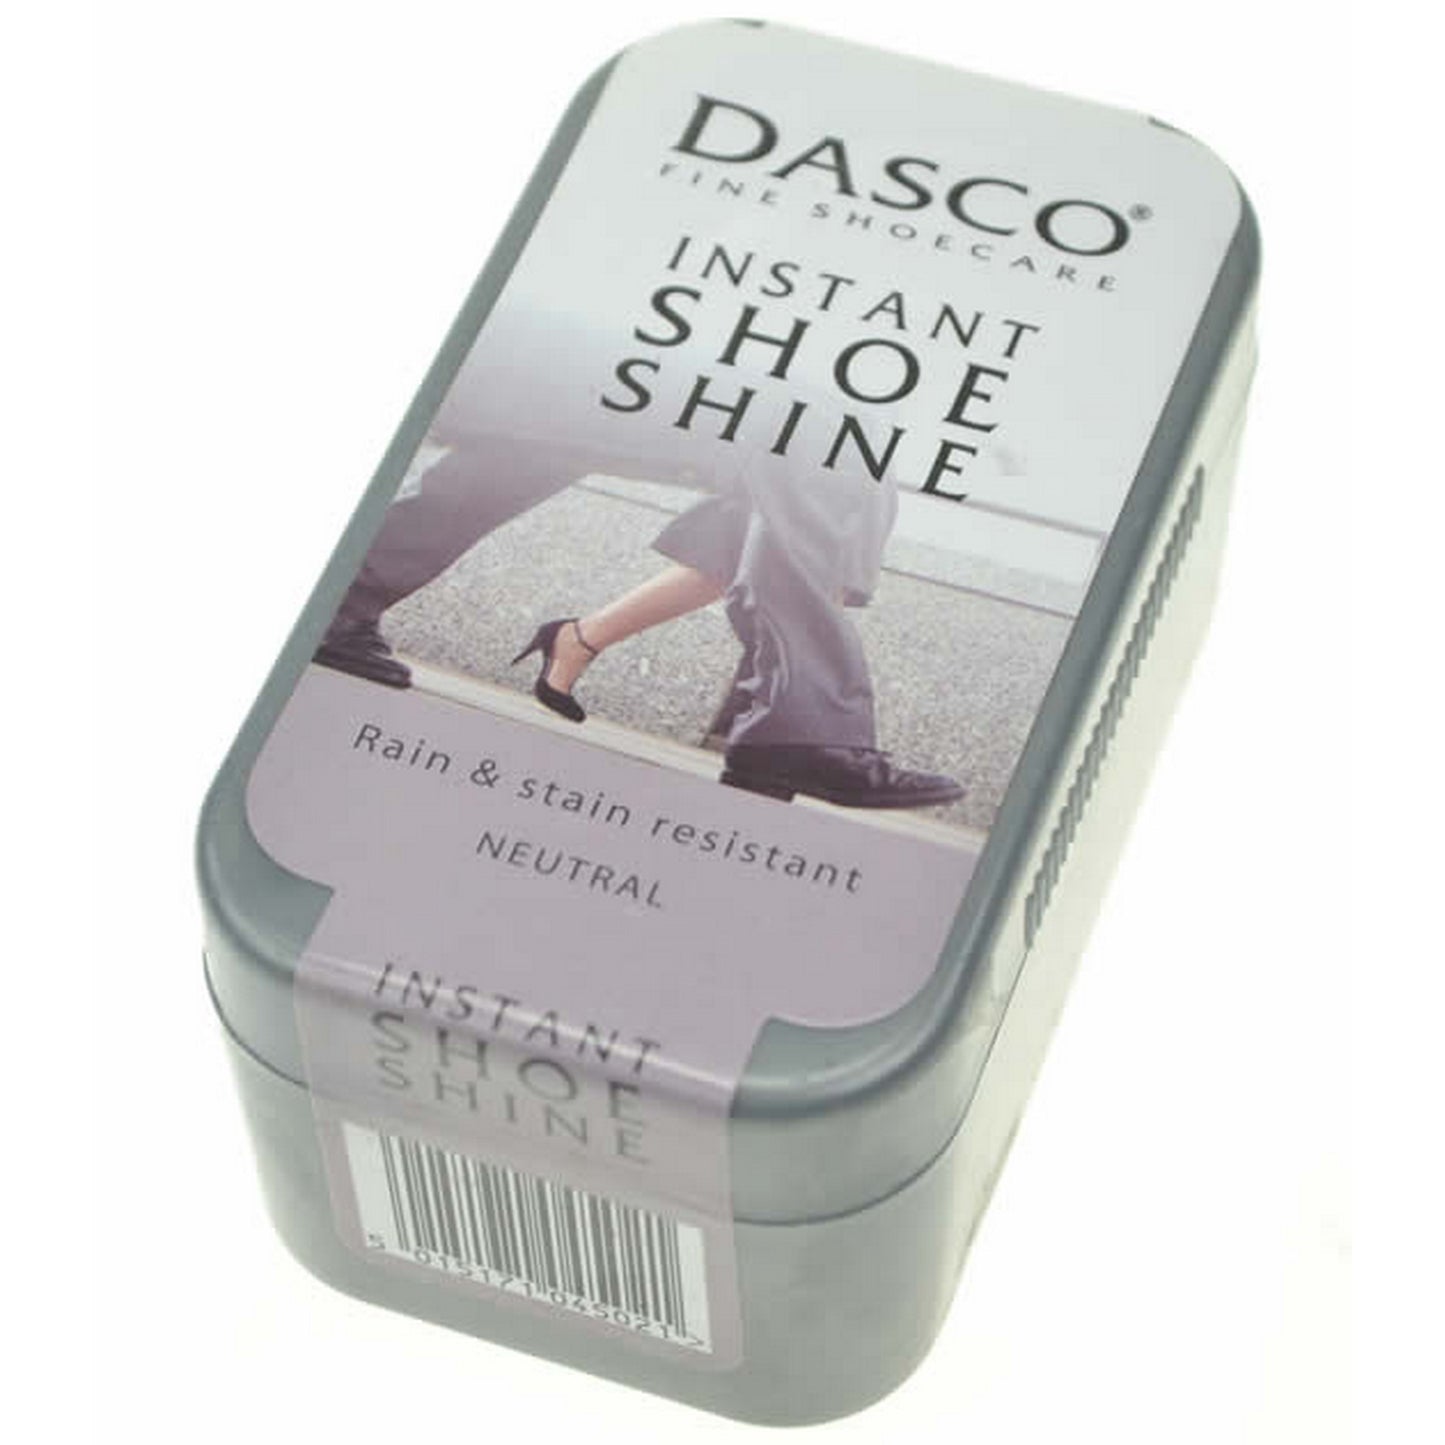 Dasco instant shoe shine sponge - Neutral No.100